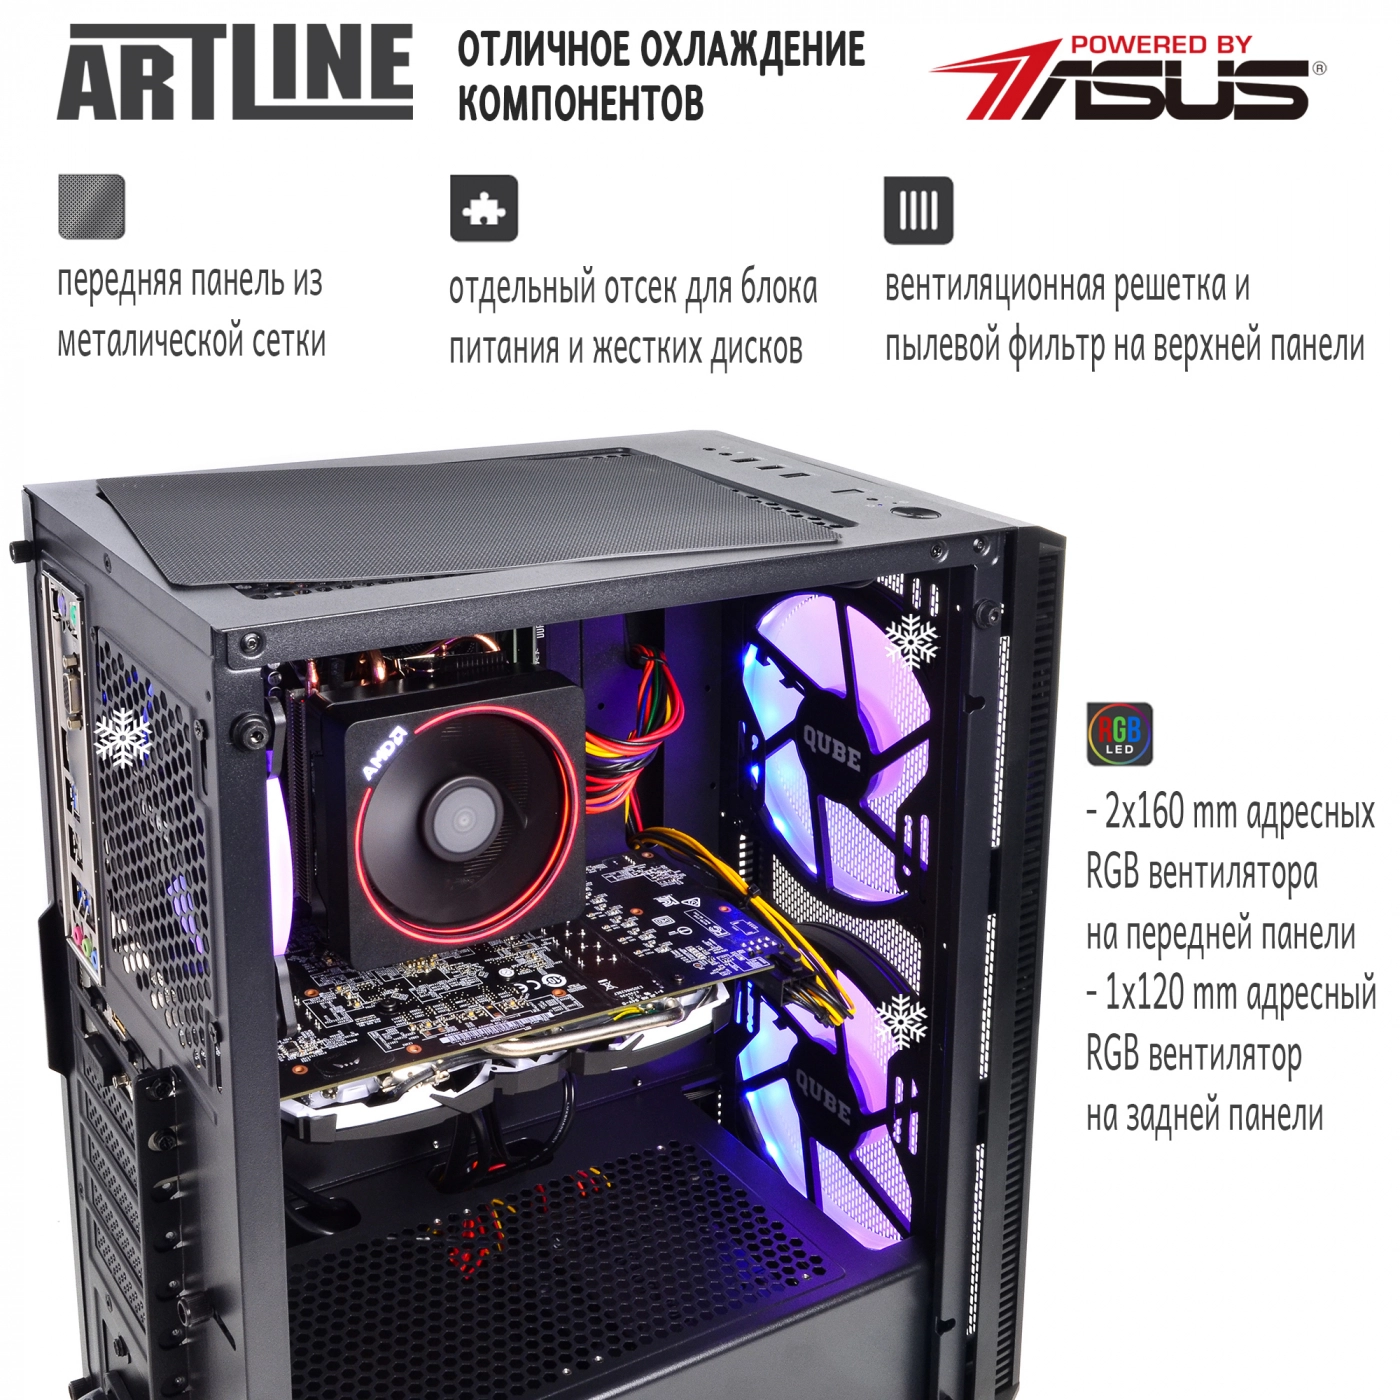 Купить Компьютер ARTLINE Gaming X61v10 - фото 2